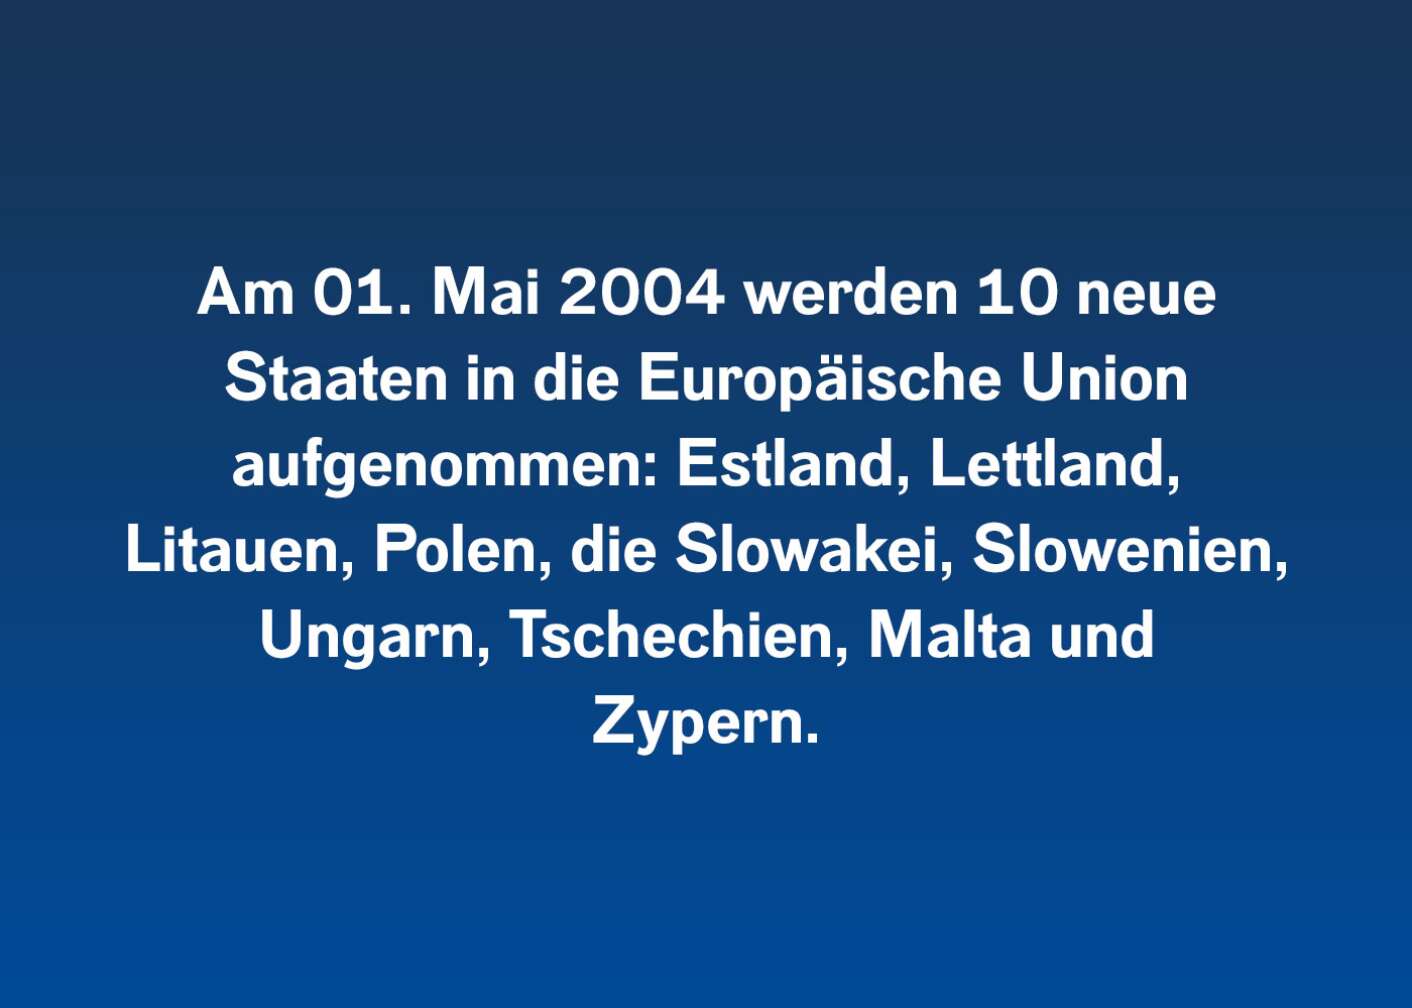 Am 01. Mai 2004 werden 10 neue Staaten in die Europäische Union aufgenommen: Estland, Lettland, Litauen, Polen, die Slowakei, Slowenien, Ungarn, Tschechien, Malta und Zypern.